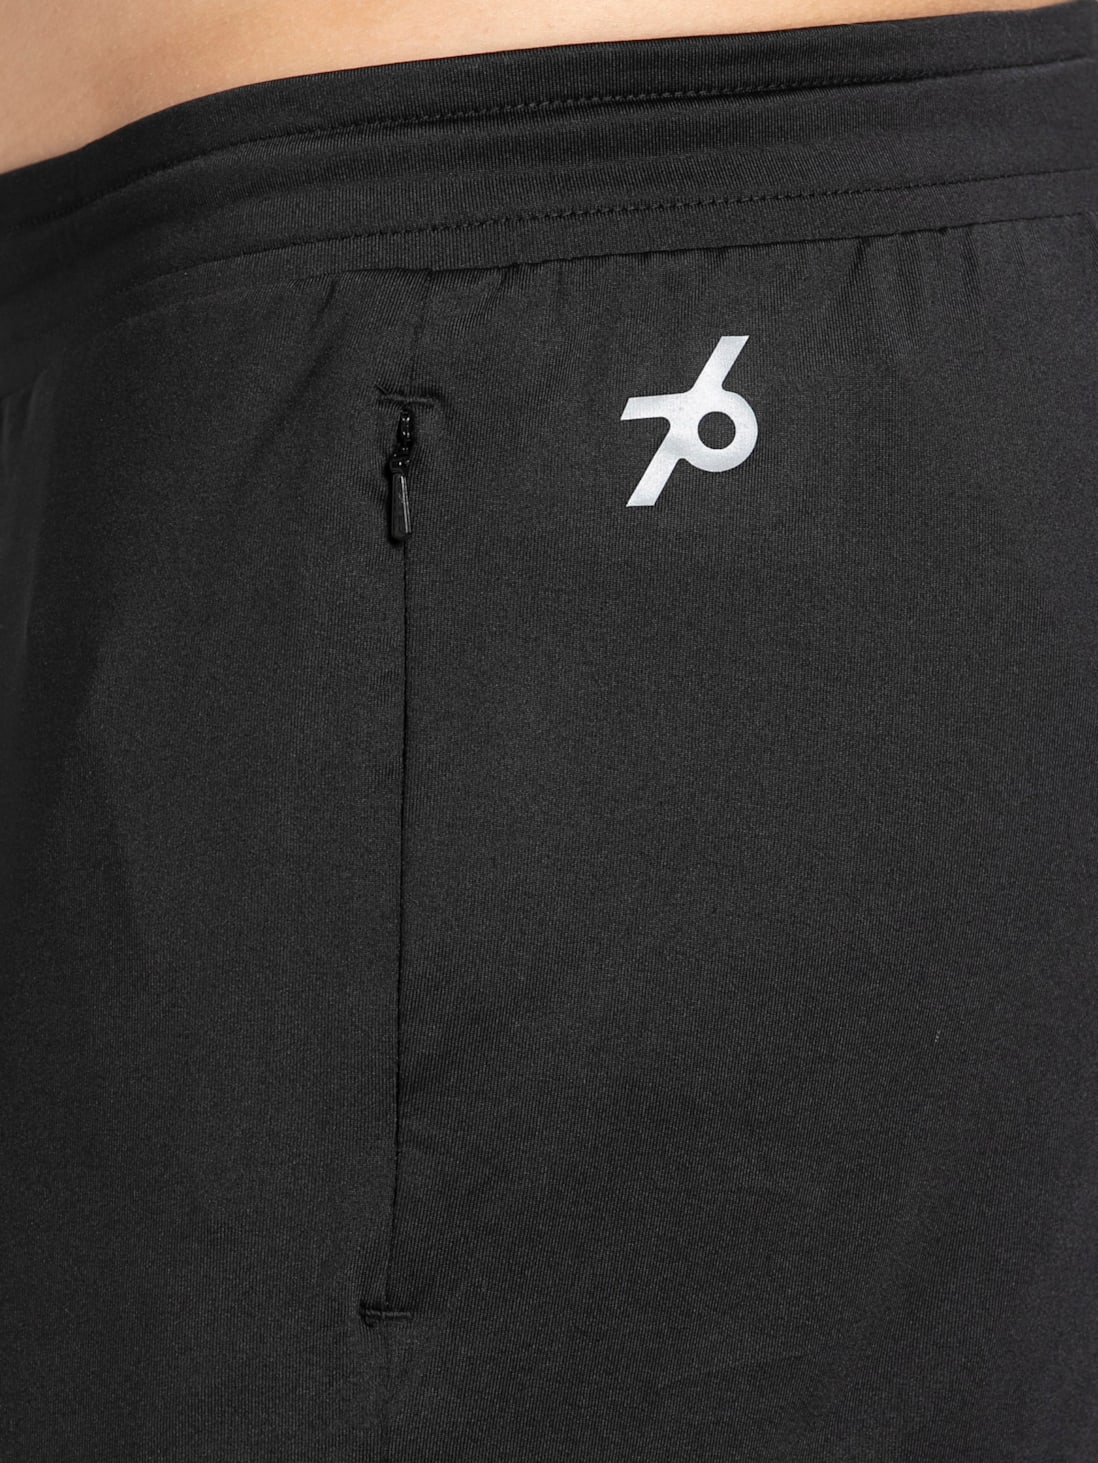 Buy Jockey Trousers online - Men - 118 products | FASHIOLA.in